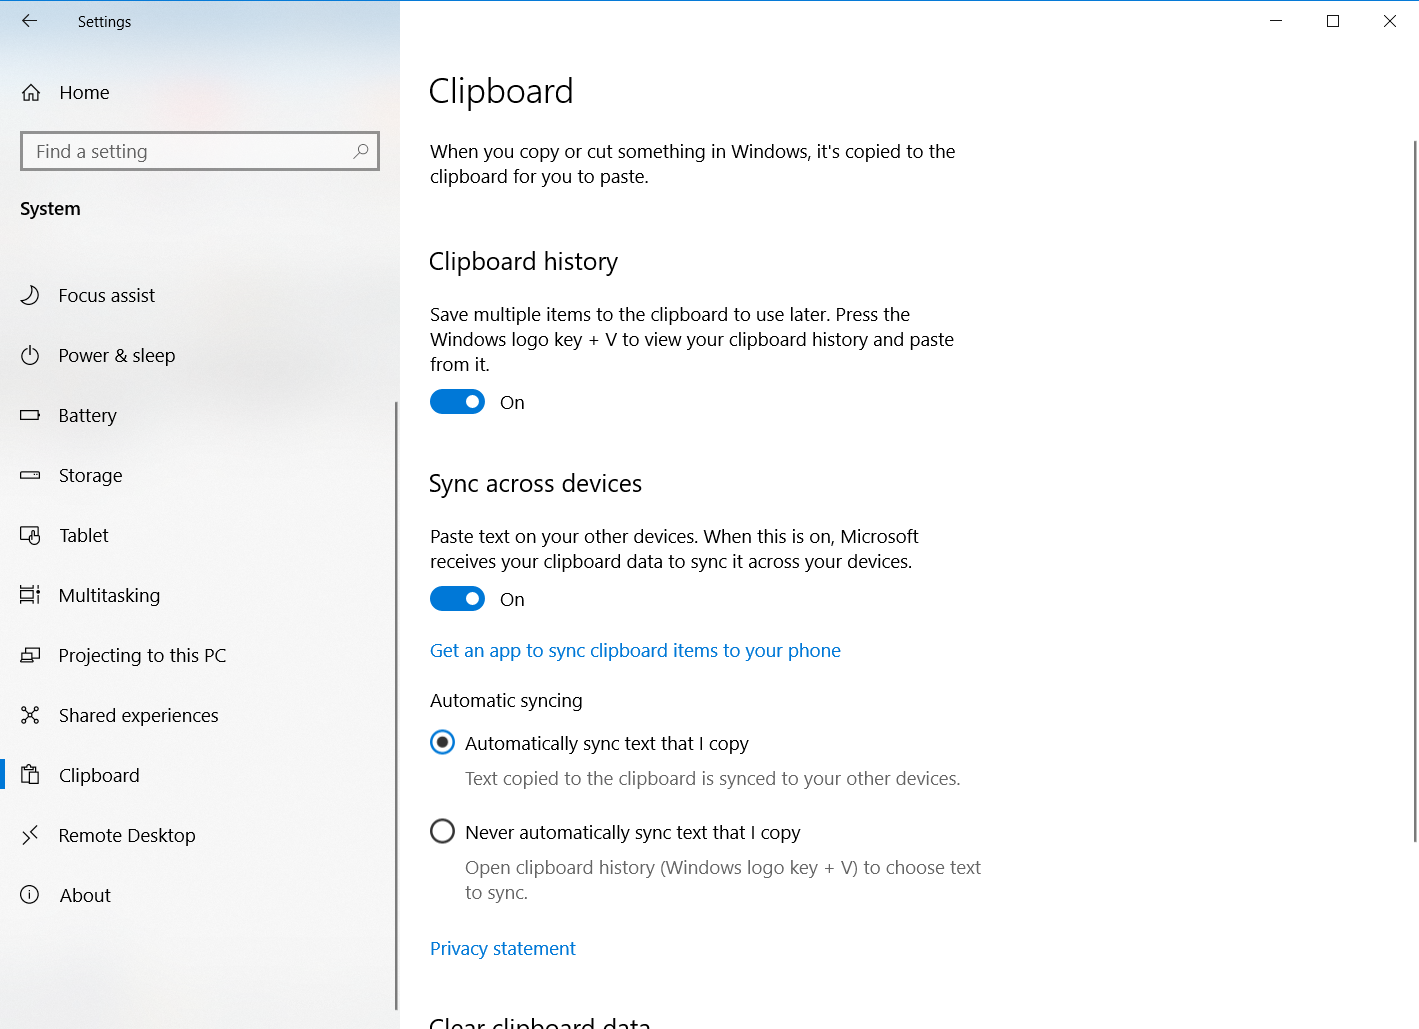 更新最新windows10系统后 Windows V快捷键打开剪贴板历史功能失效 Microsoft Community